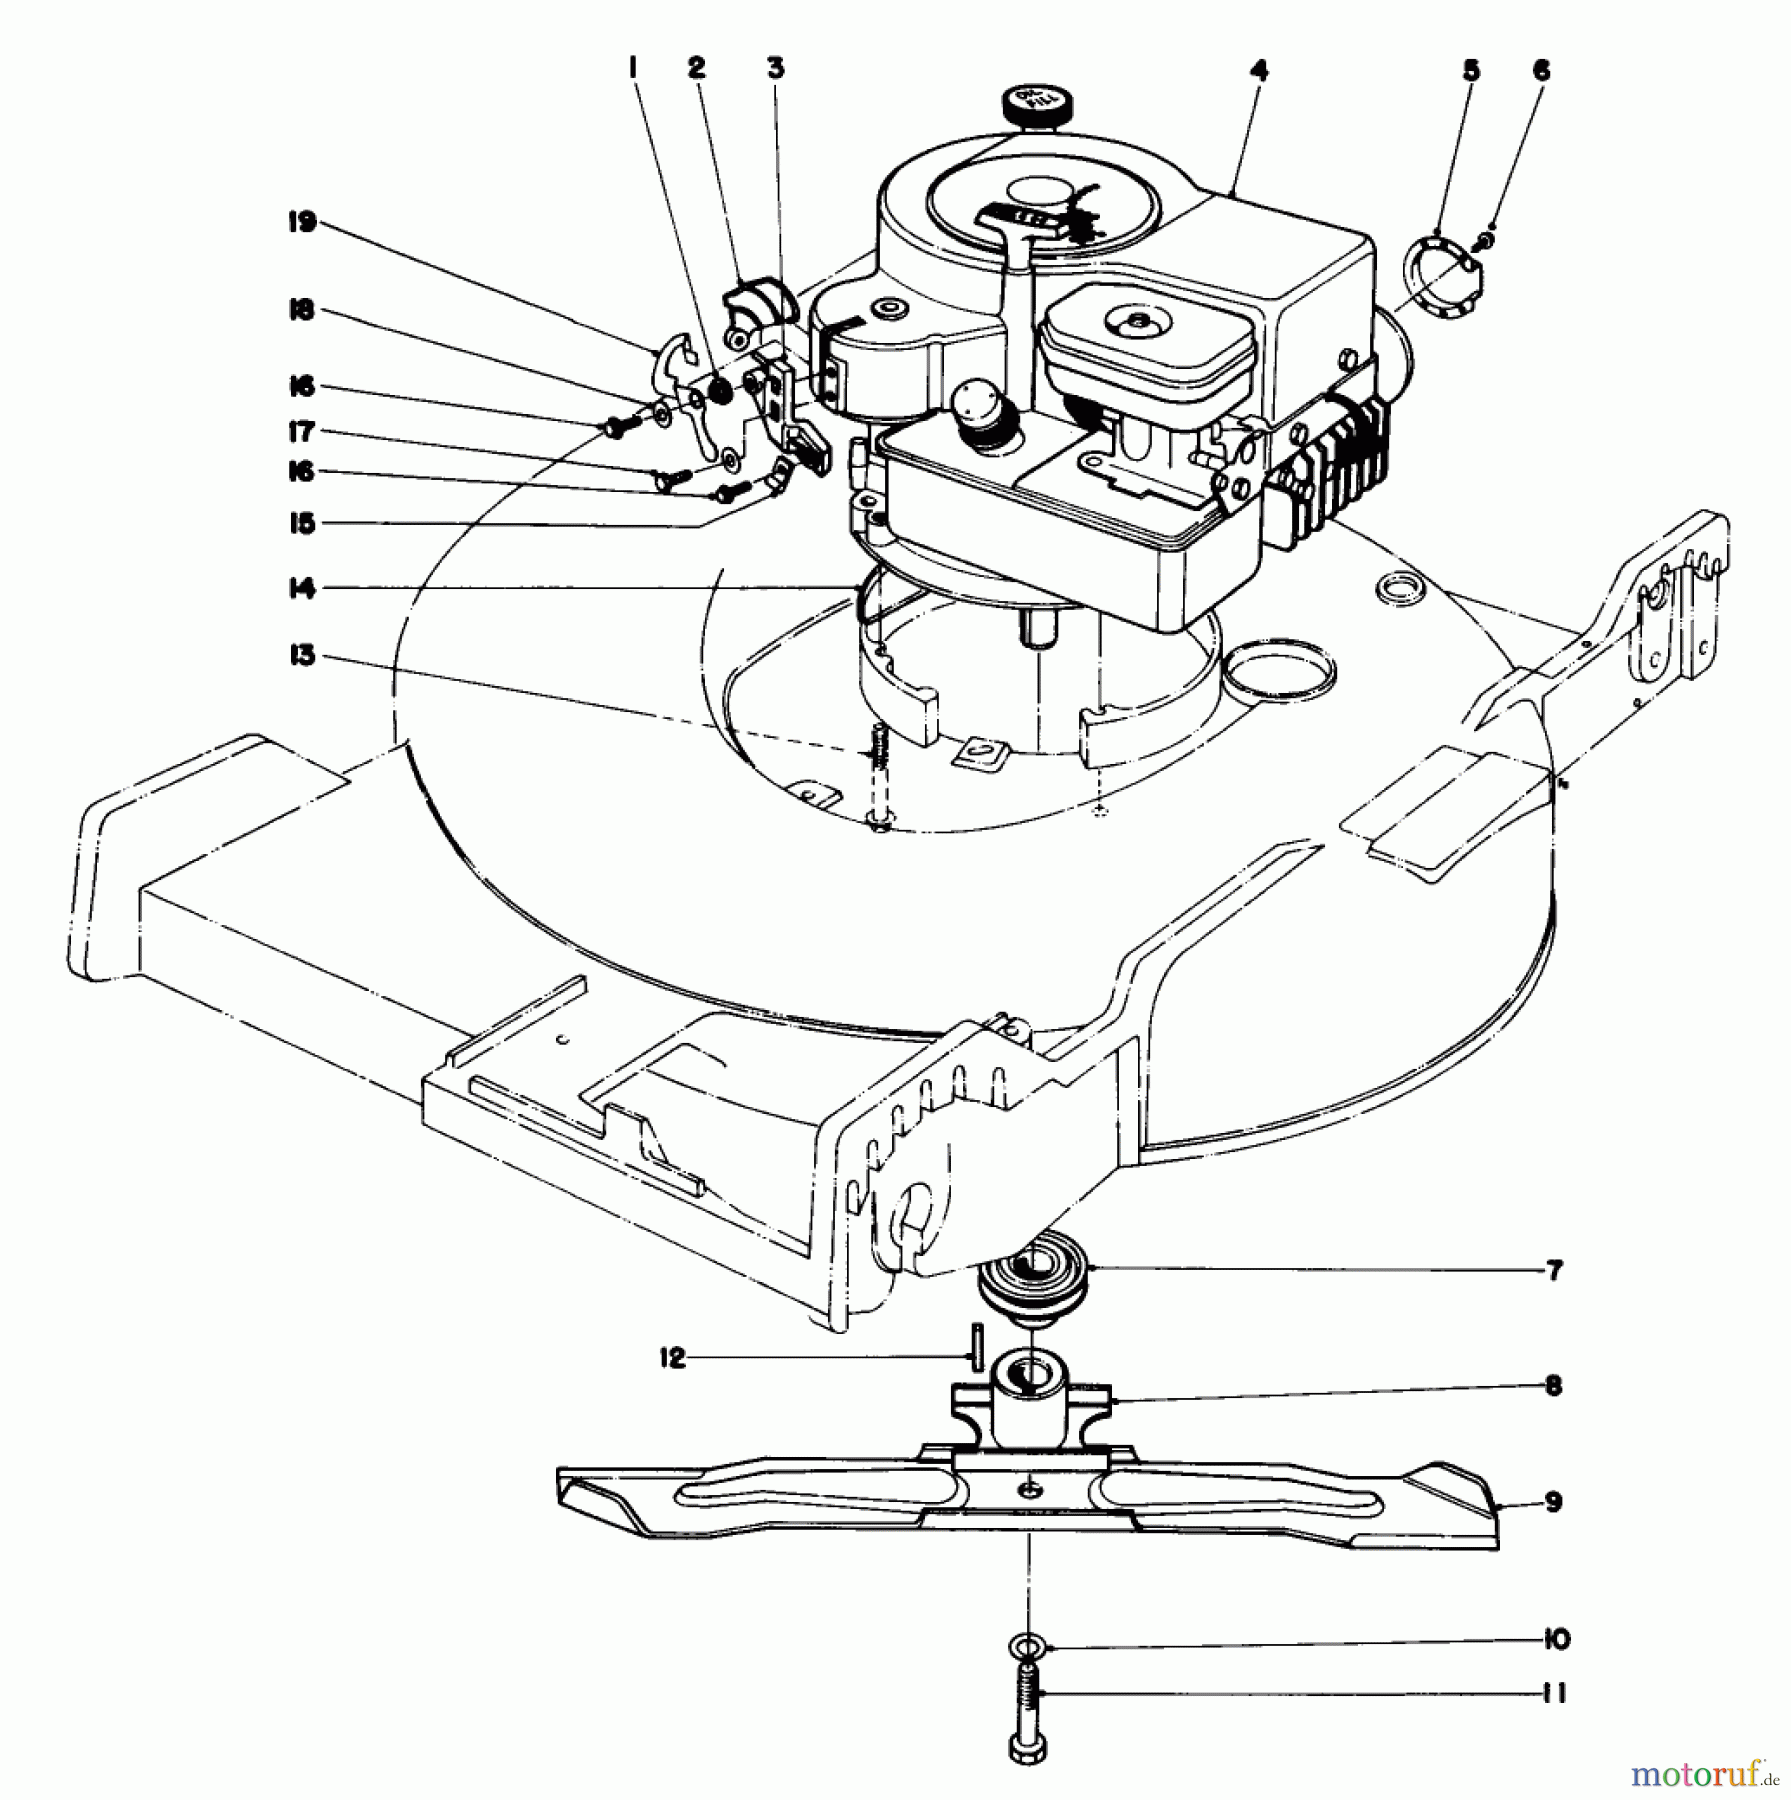  Toro Neu Mowers, Walk-Behind Seite 1 20725 - Toro Lawnmower, 1980 (0000001-0999999) ENGINE ASSEMBLY